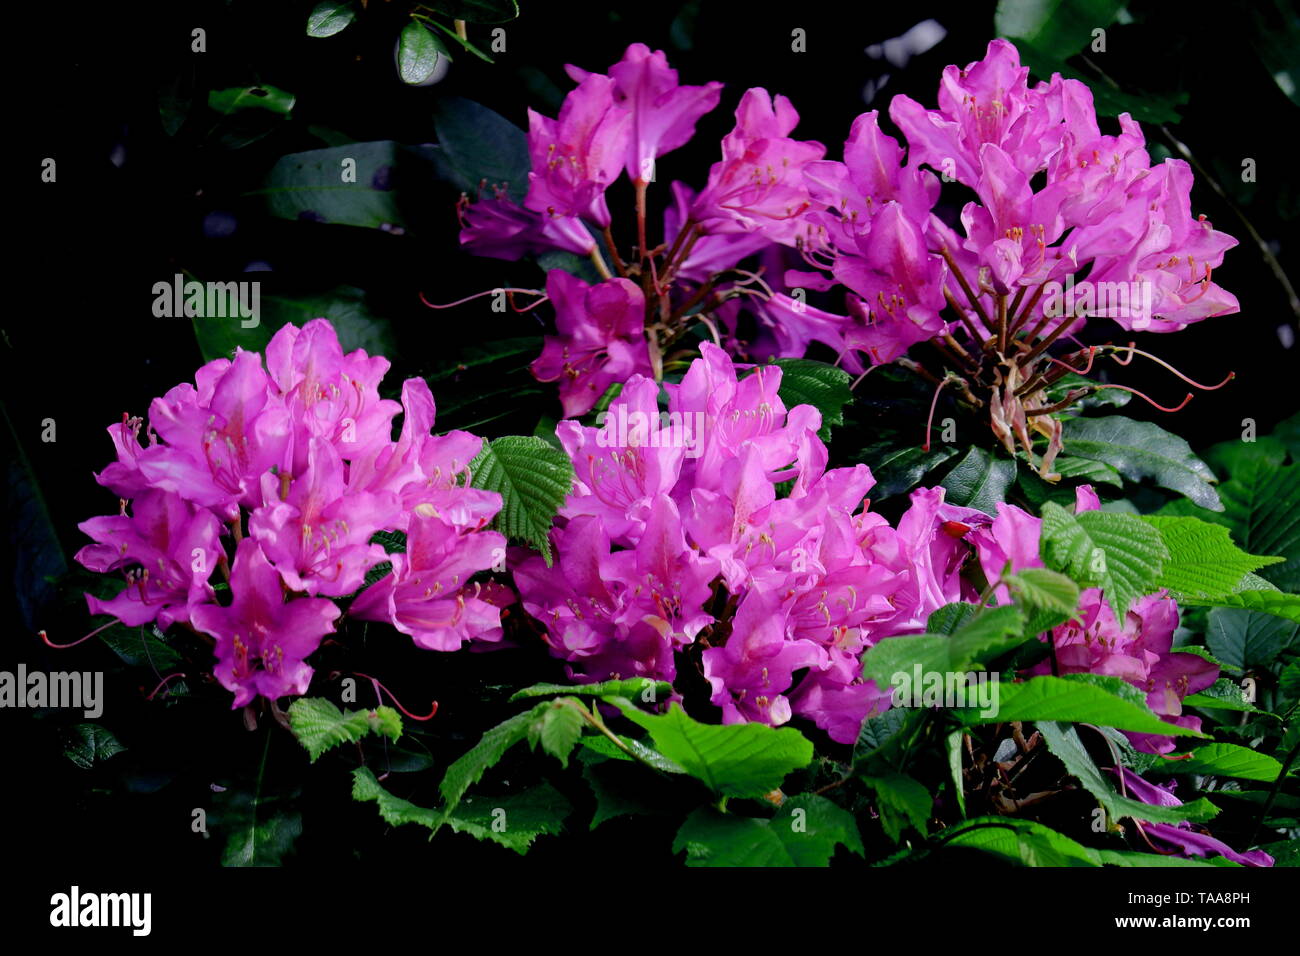 Rhododendron ponticum rhododendron commun, appelé pontique ou rhododendron, est une espèce de Rhododendron originaire du sud de l'Europe et l'Asie du Sud-Ouest. Banque D'Images